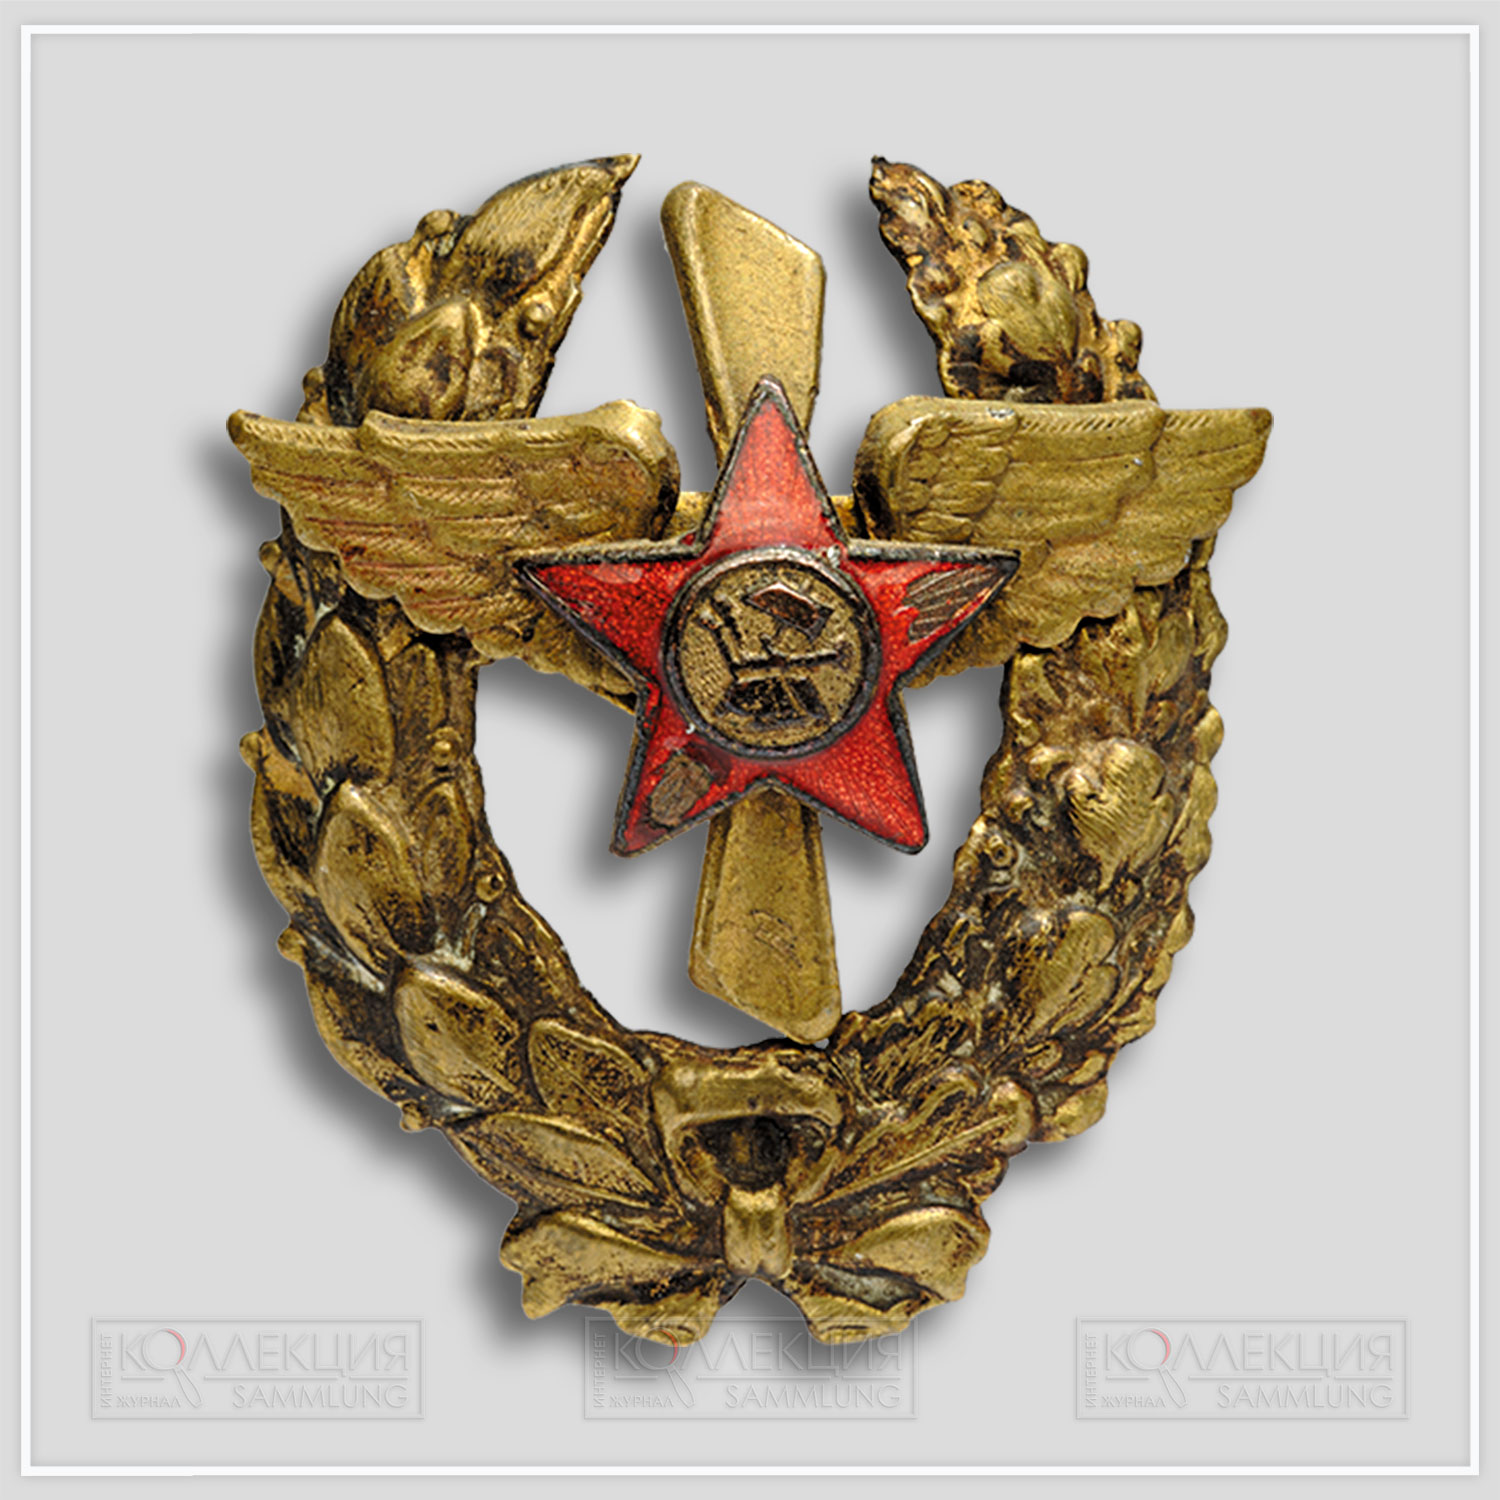 Нагрудный «революционный военный знак» с изображением красной звезды в венке. Частная коллекция